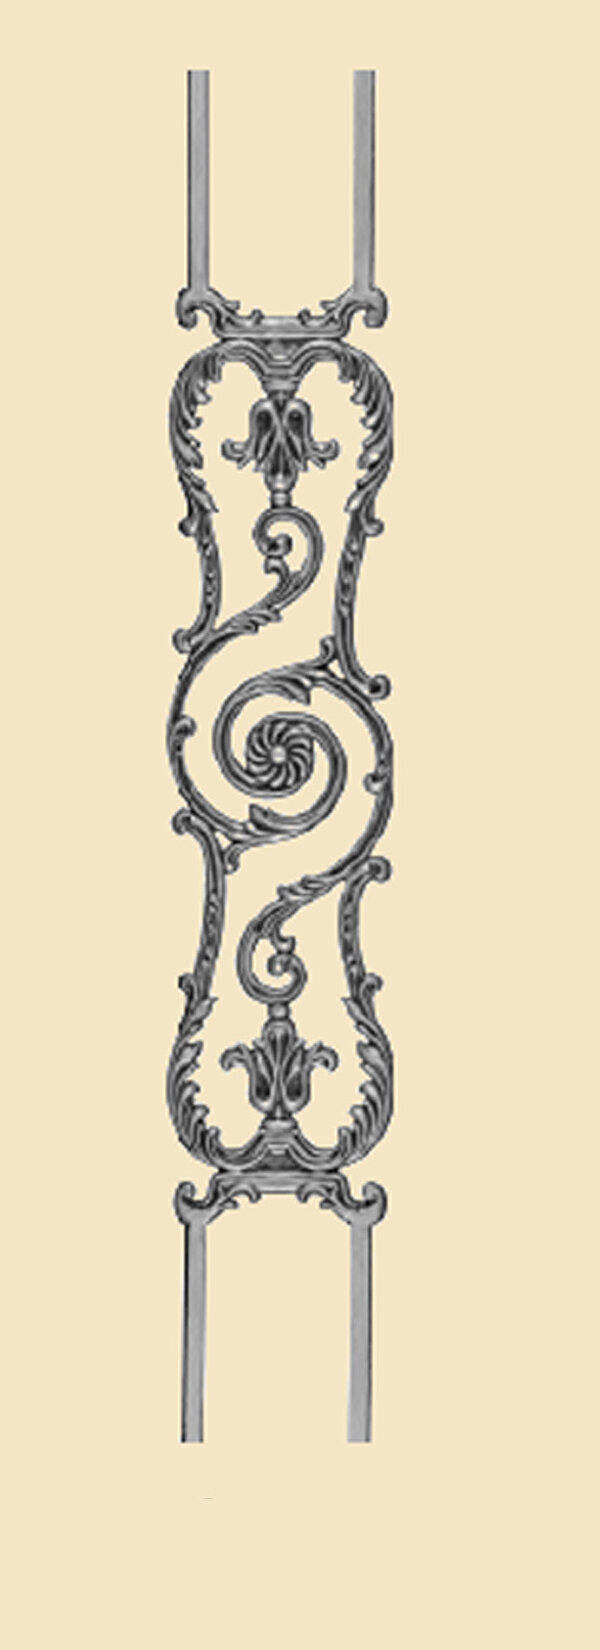 objet de decoration portails et garde corps 1503